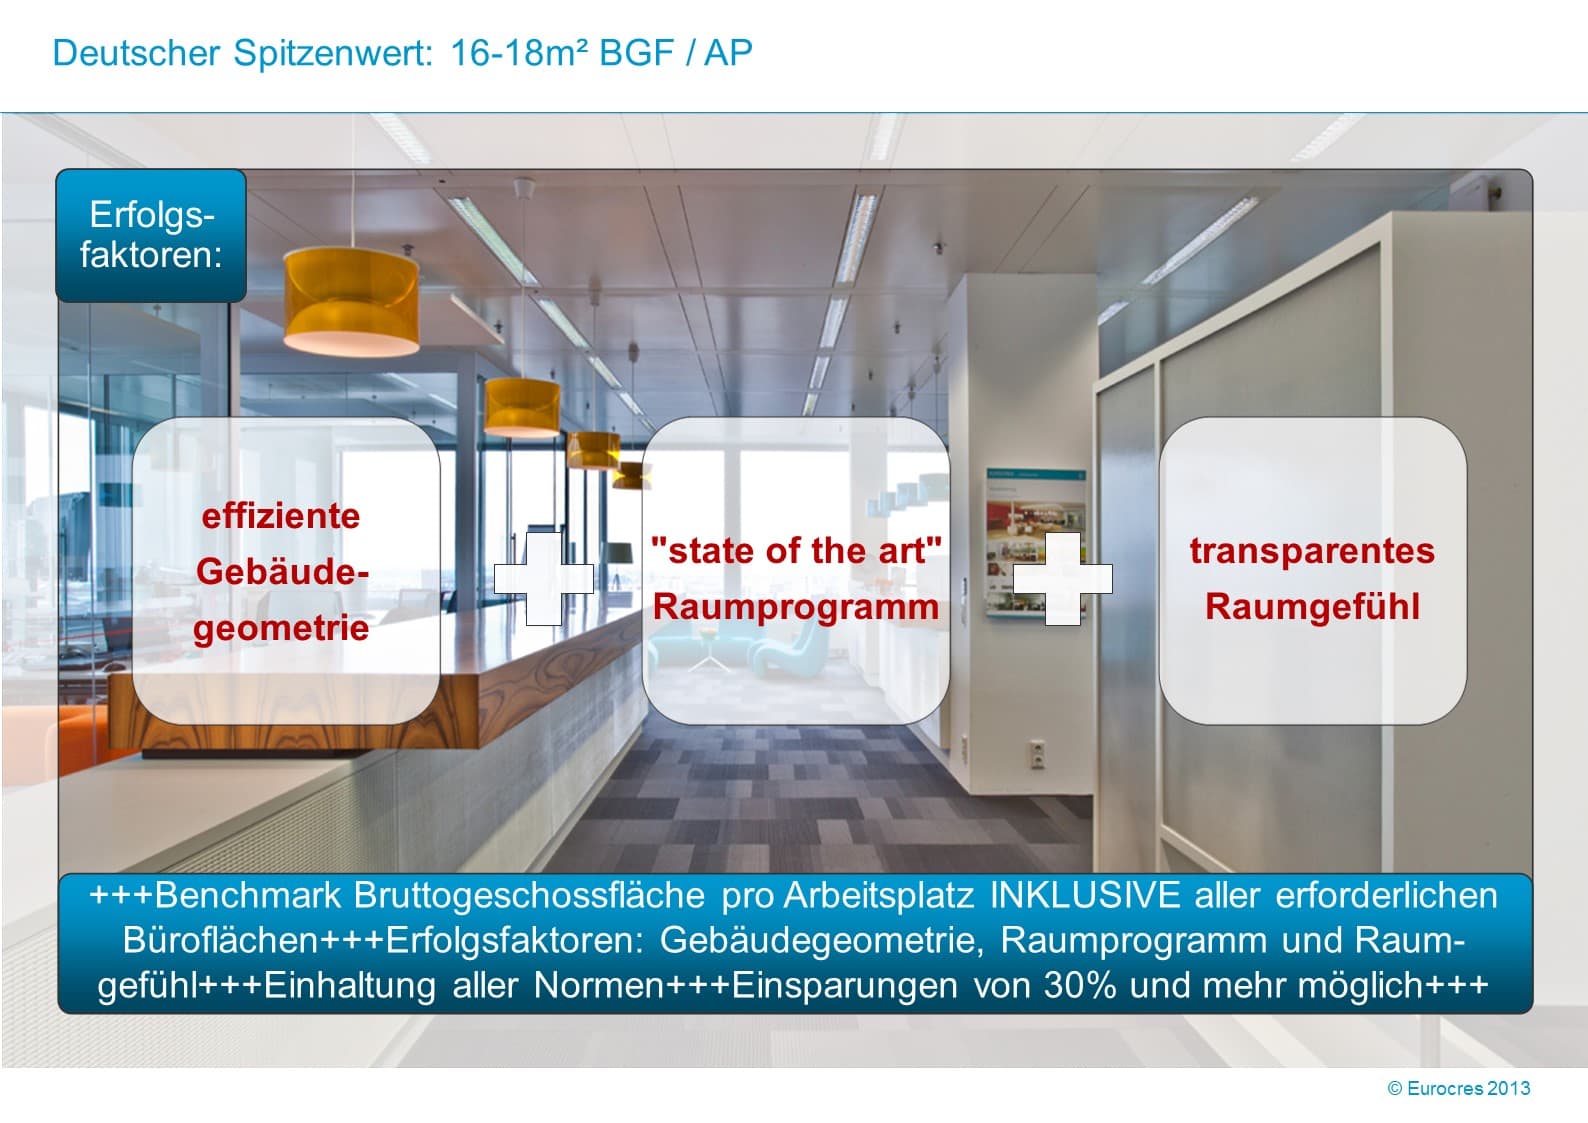 WorkPlace Flash: Deutscher Spitzenwert: 16-18m² BGF / AP